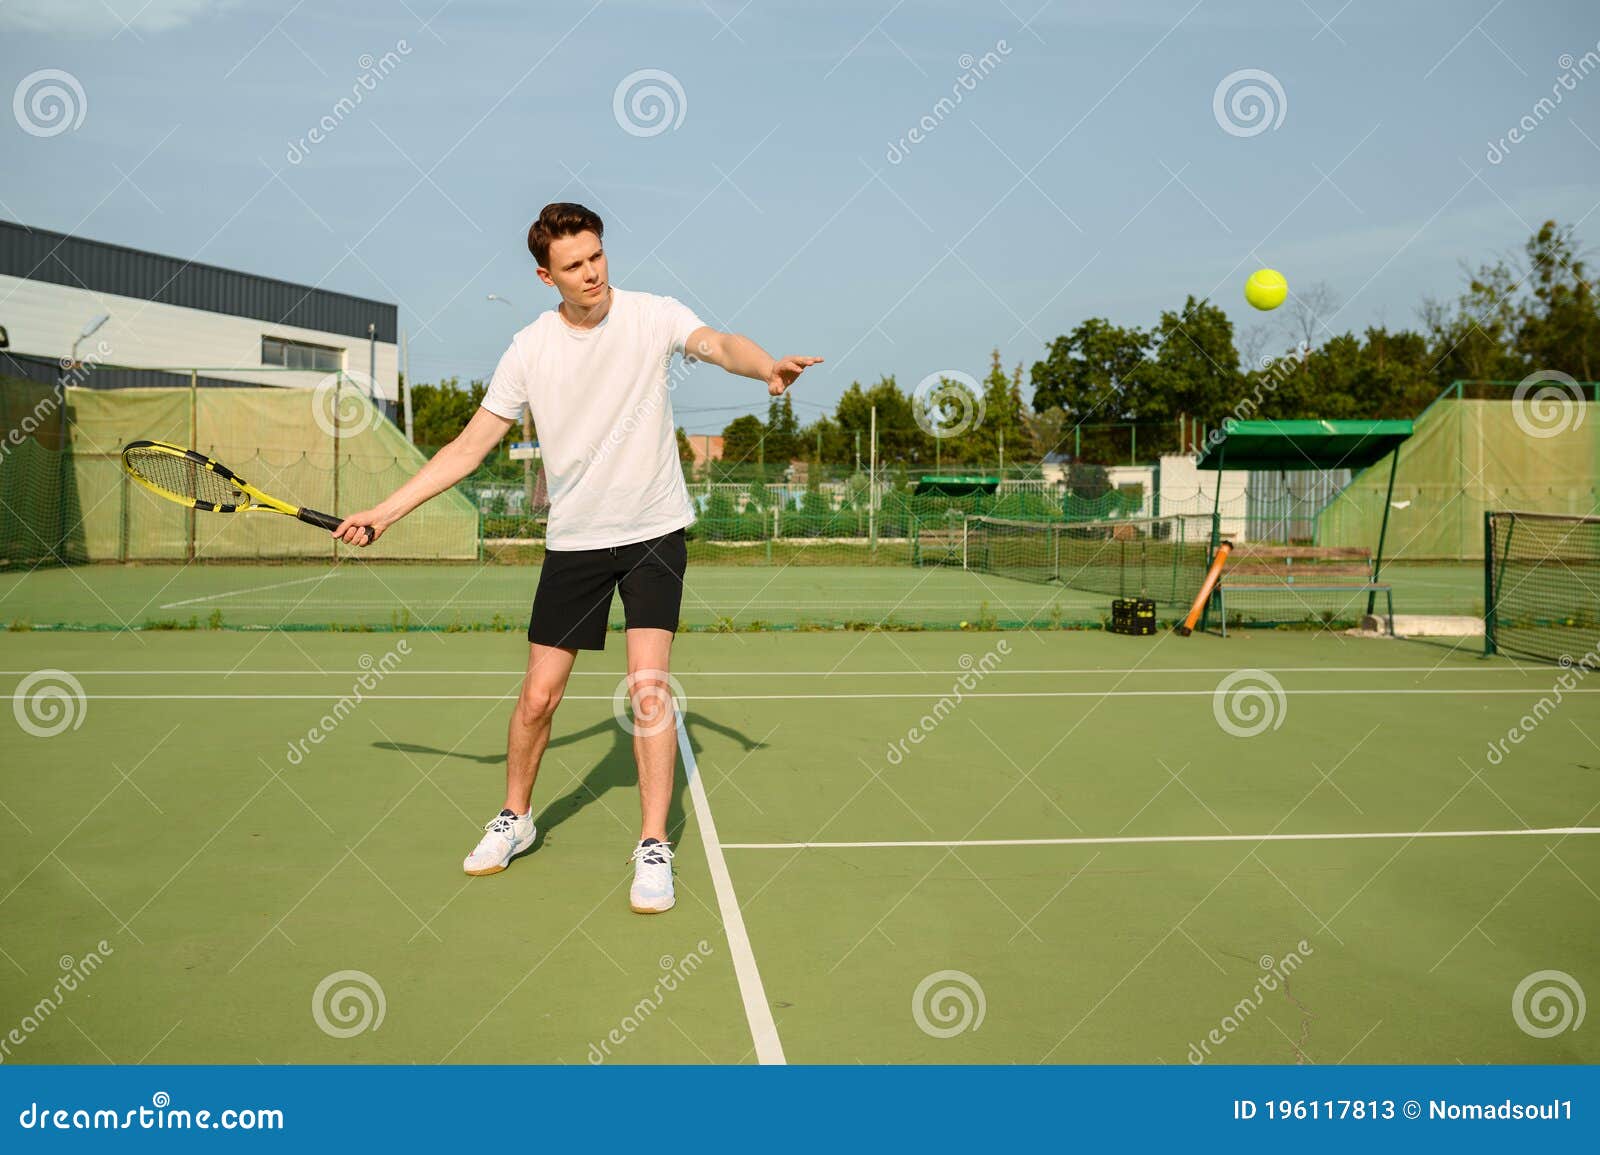 Jogador de tênis masculino ãƒâƒã‚â'ãƒâ‚ã‚â oncentrado no jogo. homem espera  o arremesso bater a bola de volta